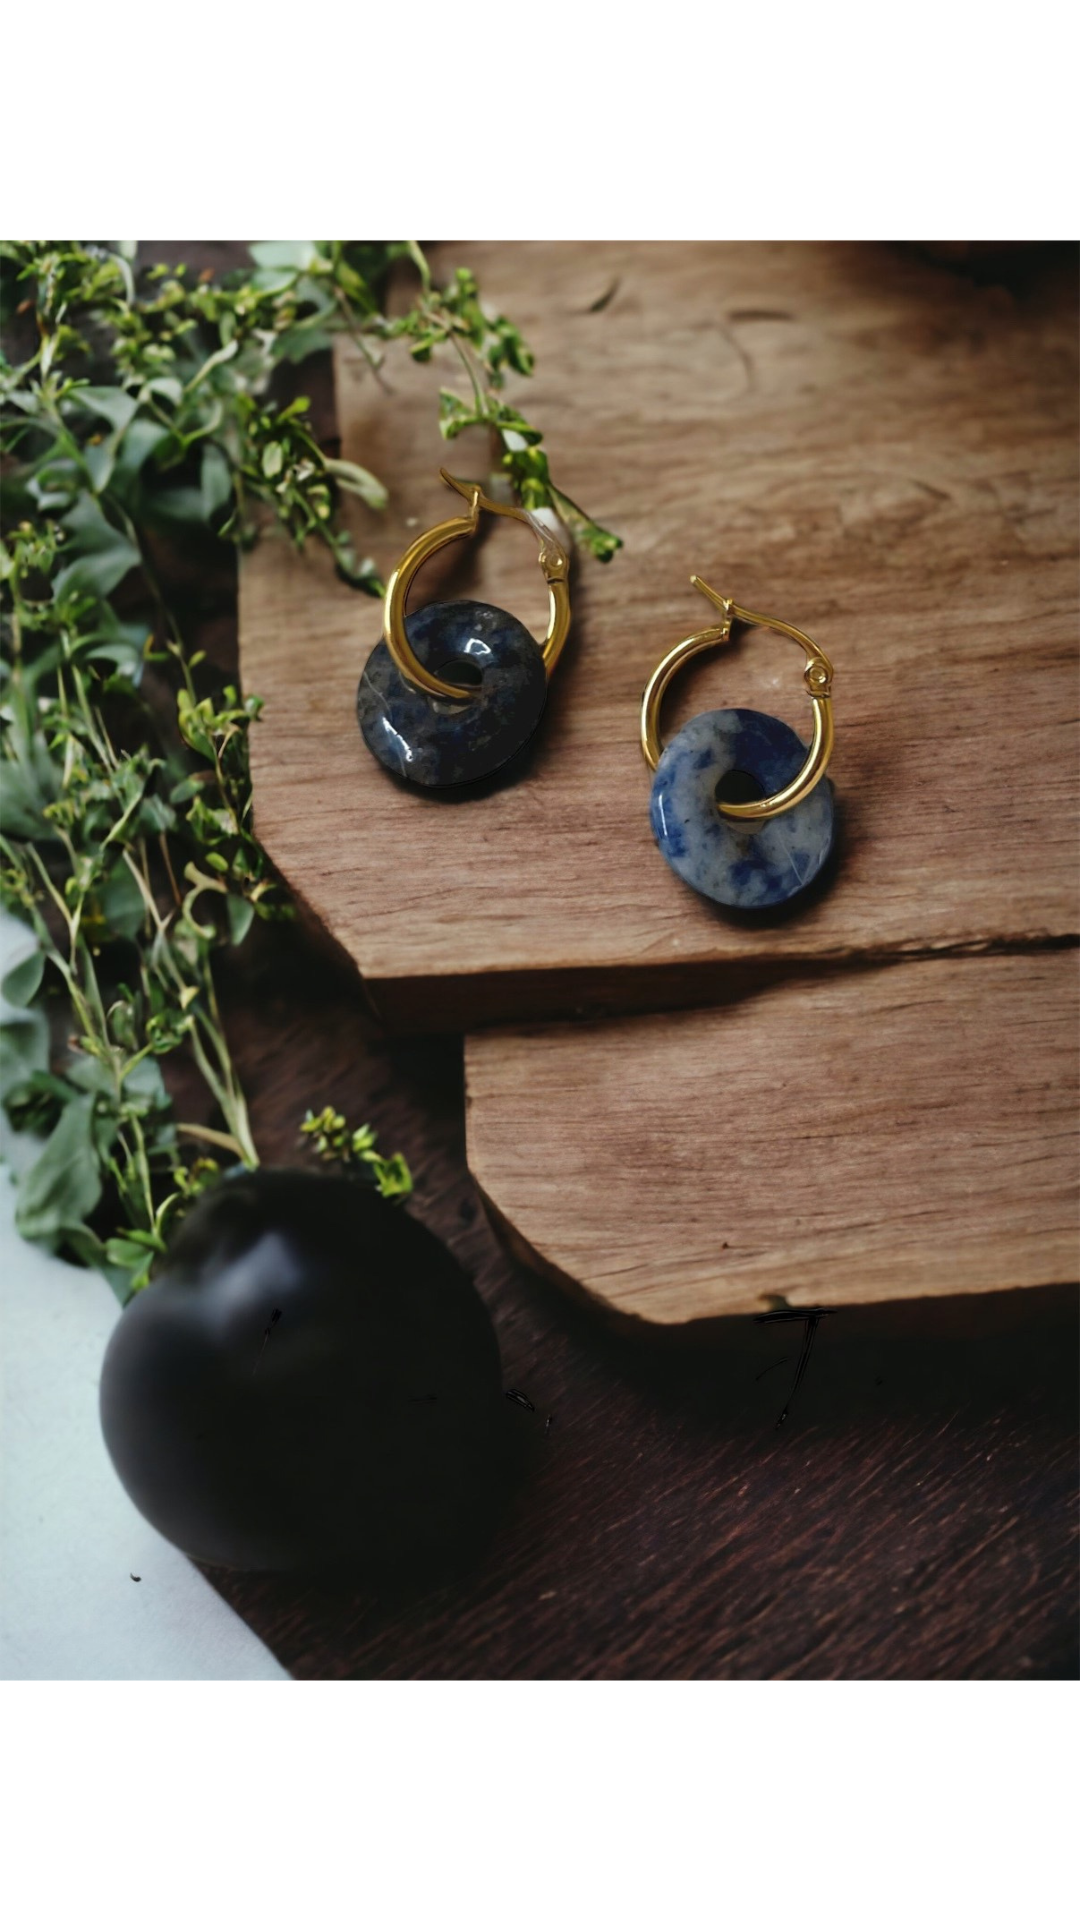 Belleus Crystalline earrings - Natural Blue-Spot Jasper crystal with 18K Gold-plated, stainless-steel hoop earrings